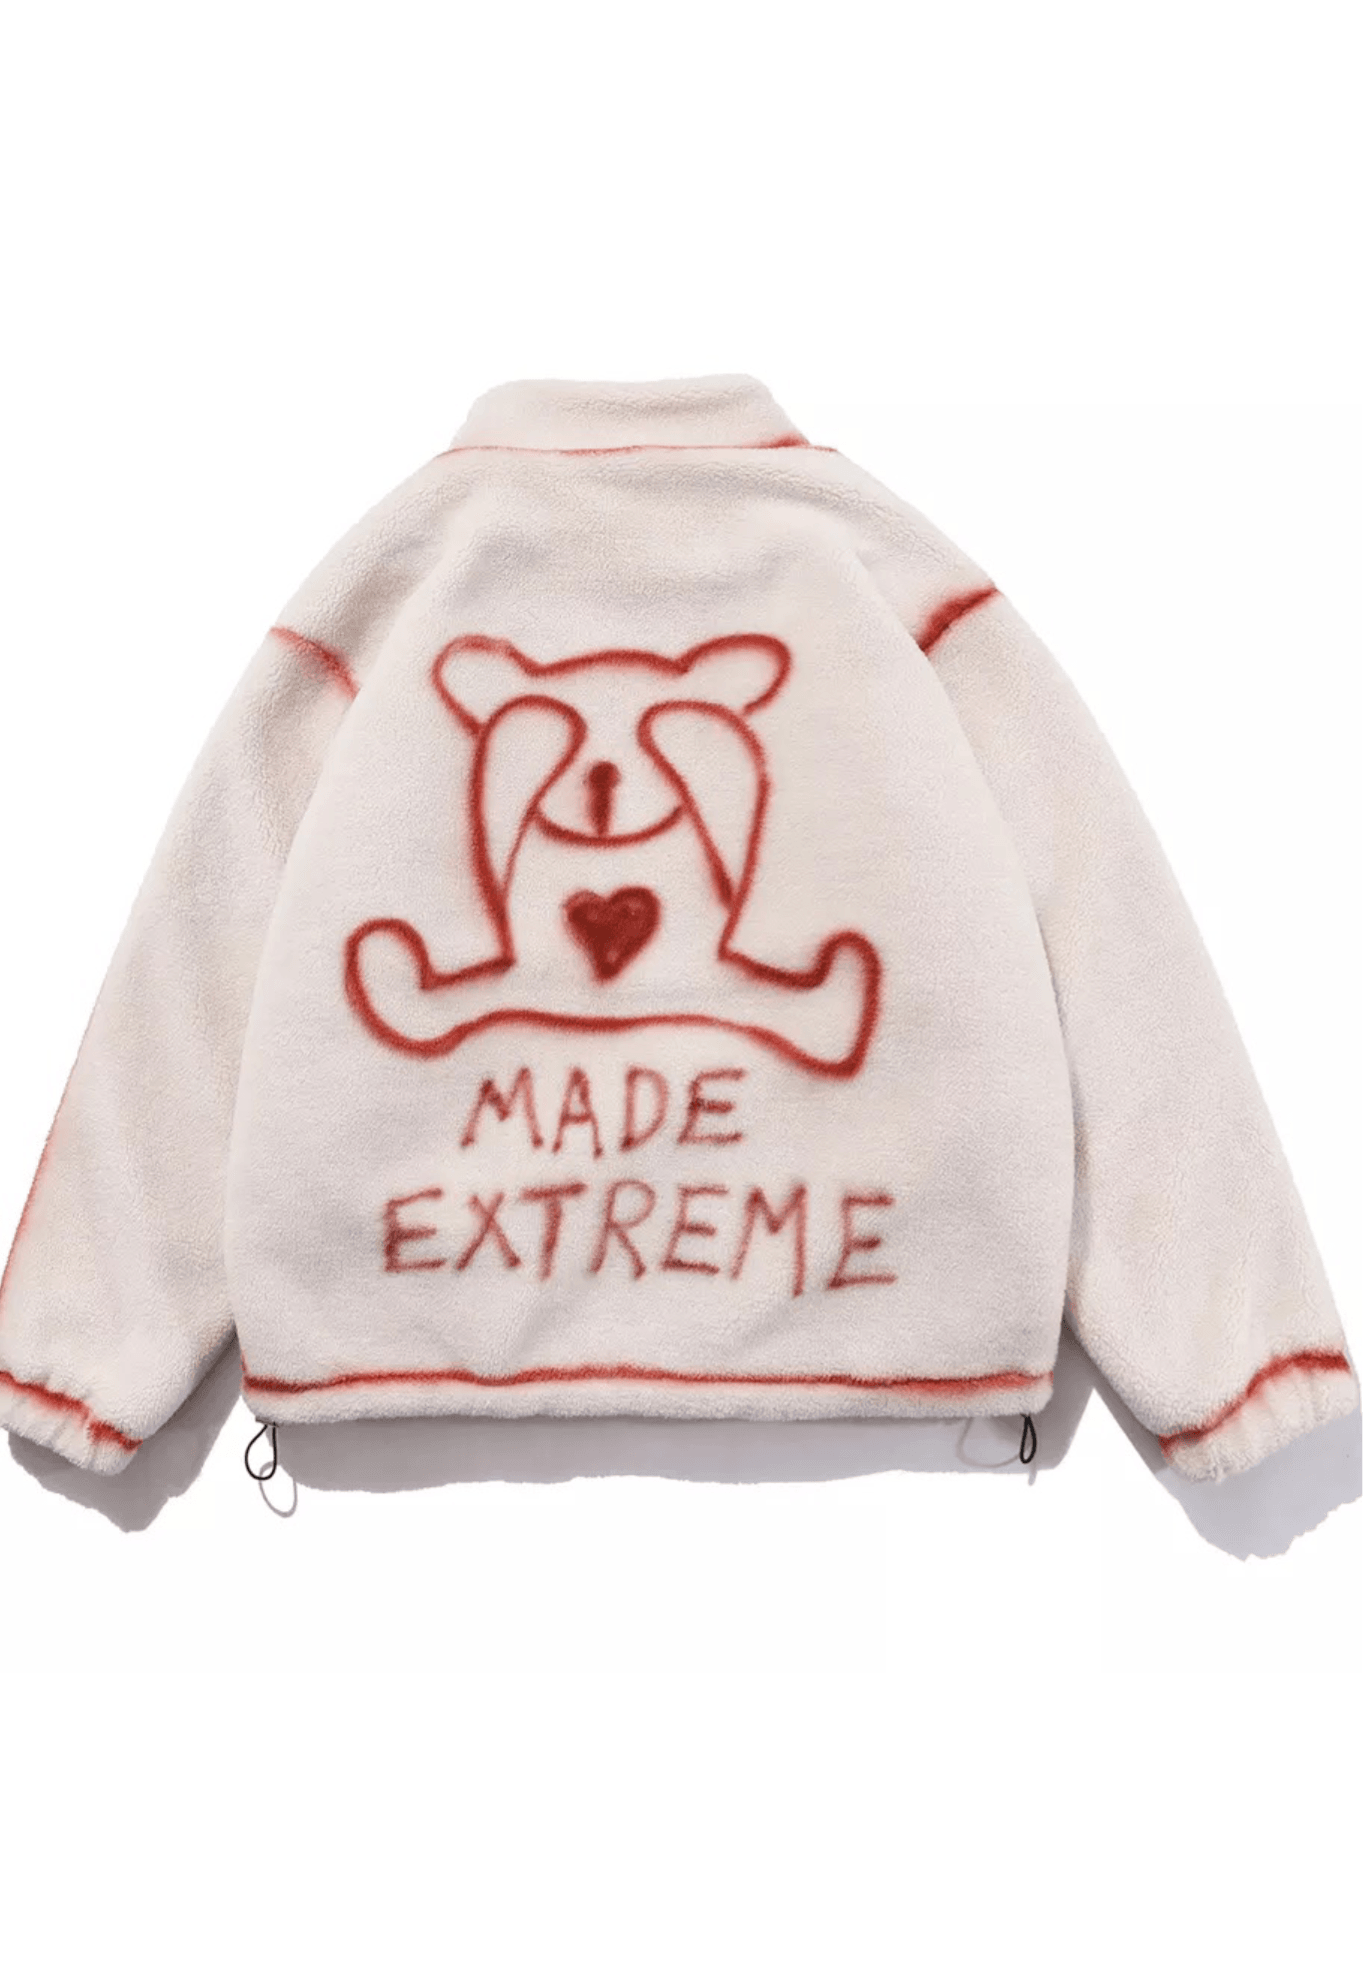 ‘Made Extreme’ Plush Jacket - shopuntitled.co